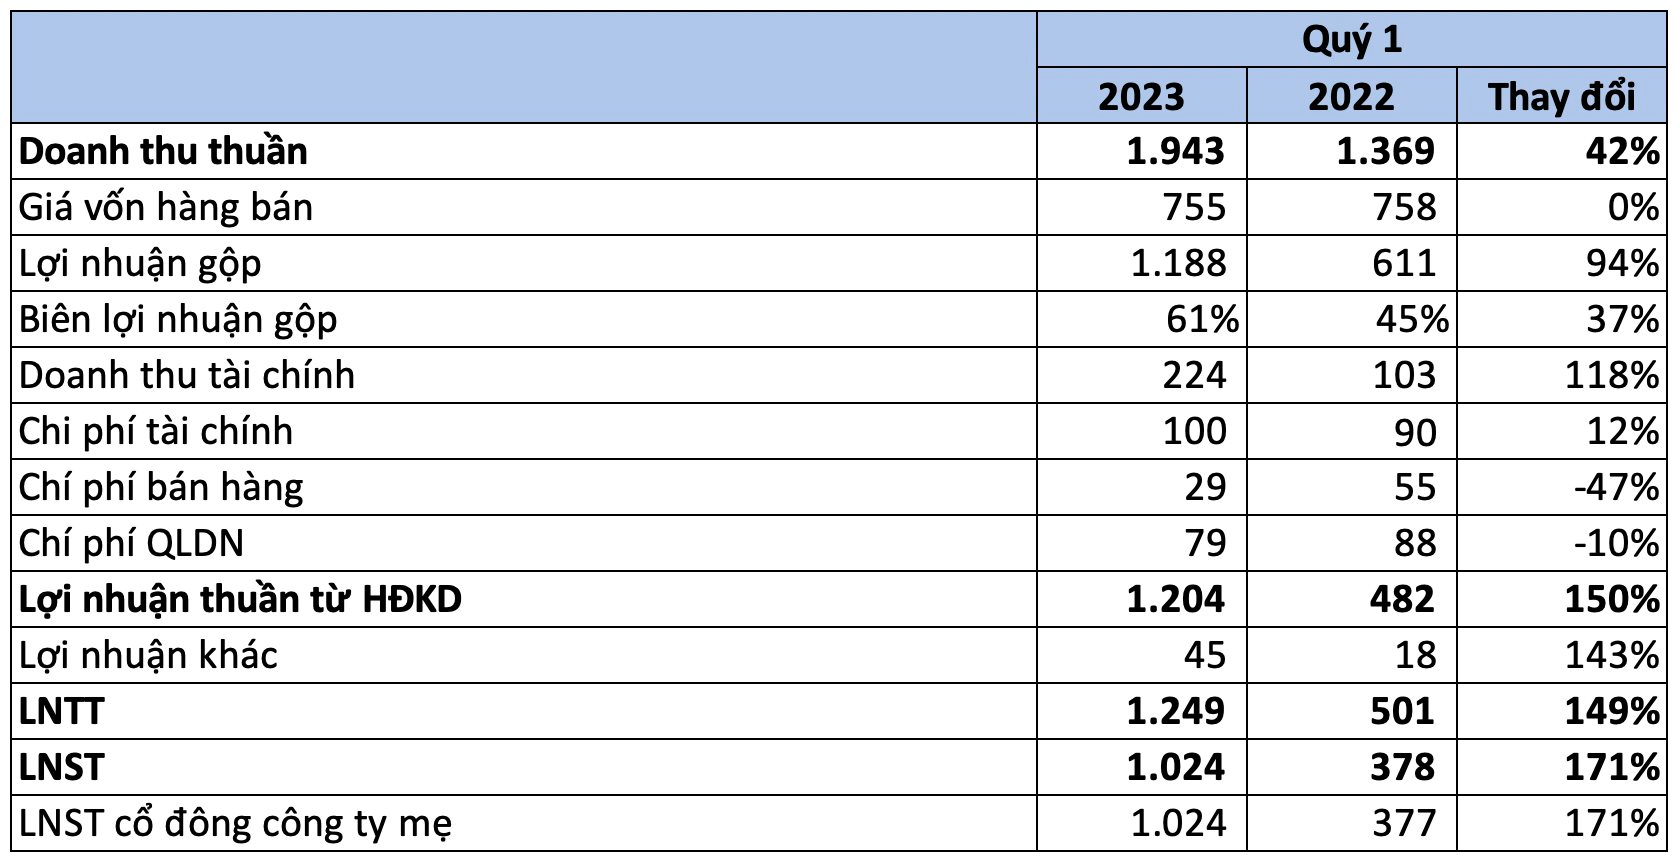 Vincom Retail (VRE) lãi kỷ lục trong quý I/2023, gấp 3 lần cùng kỳ - Ảnh 1.